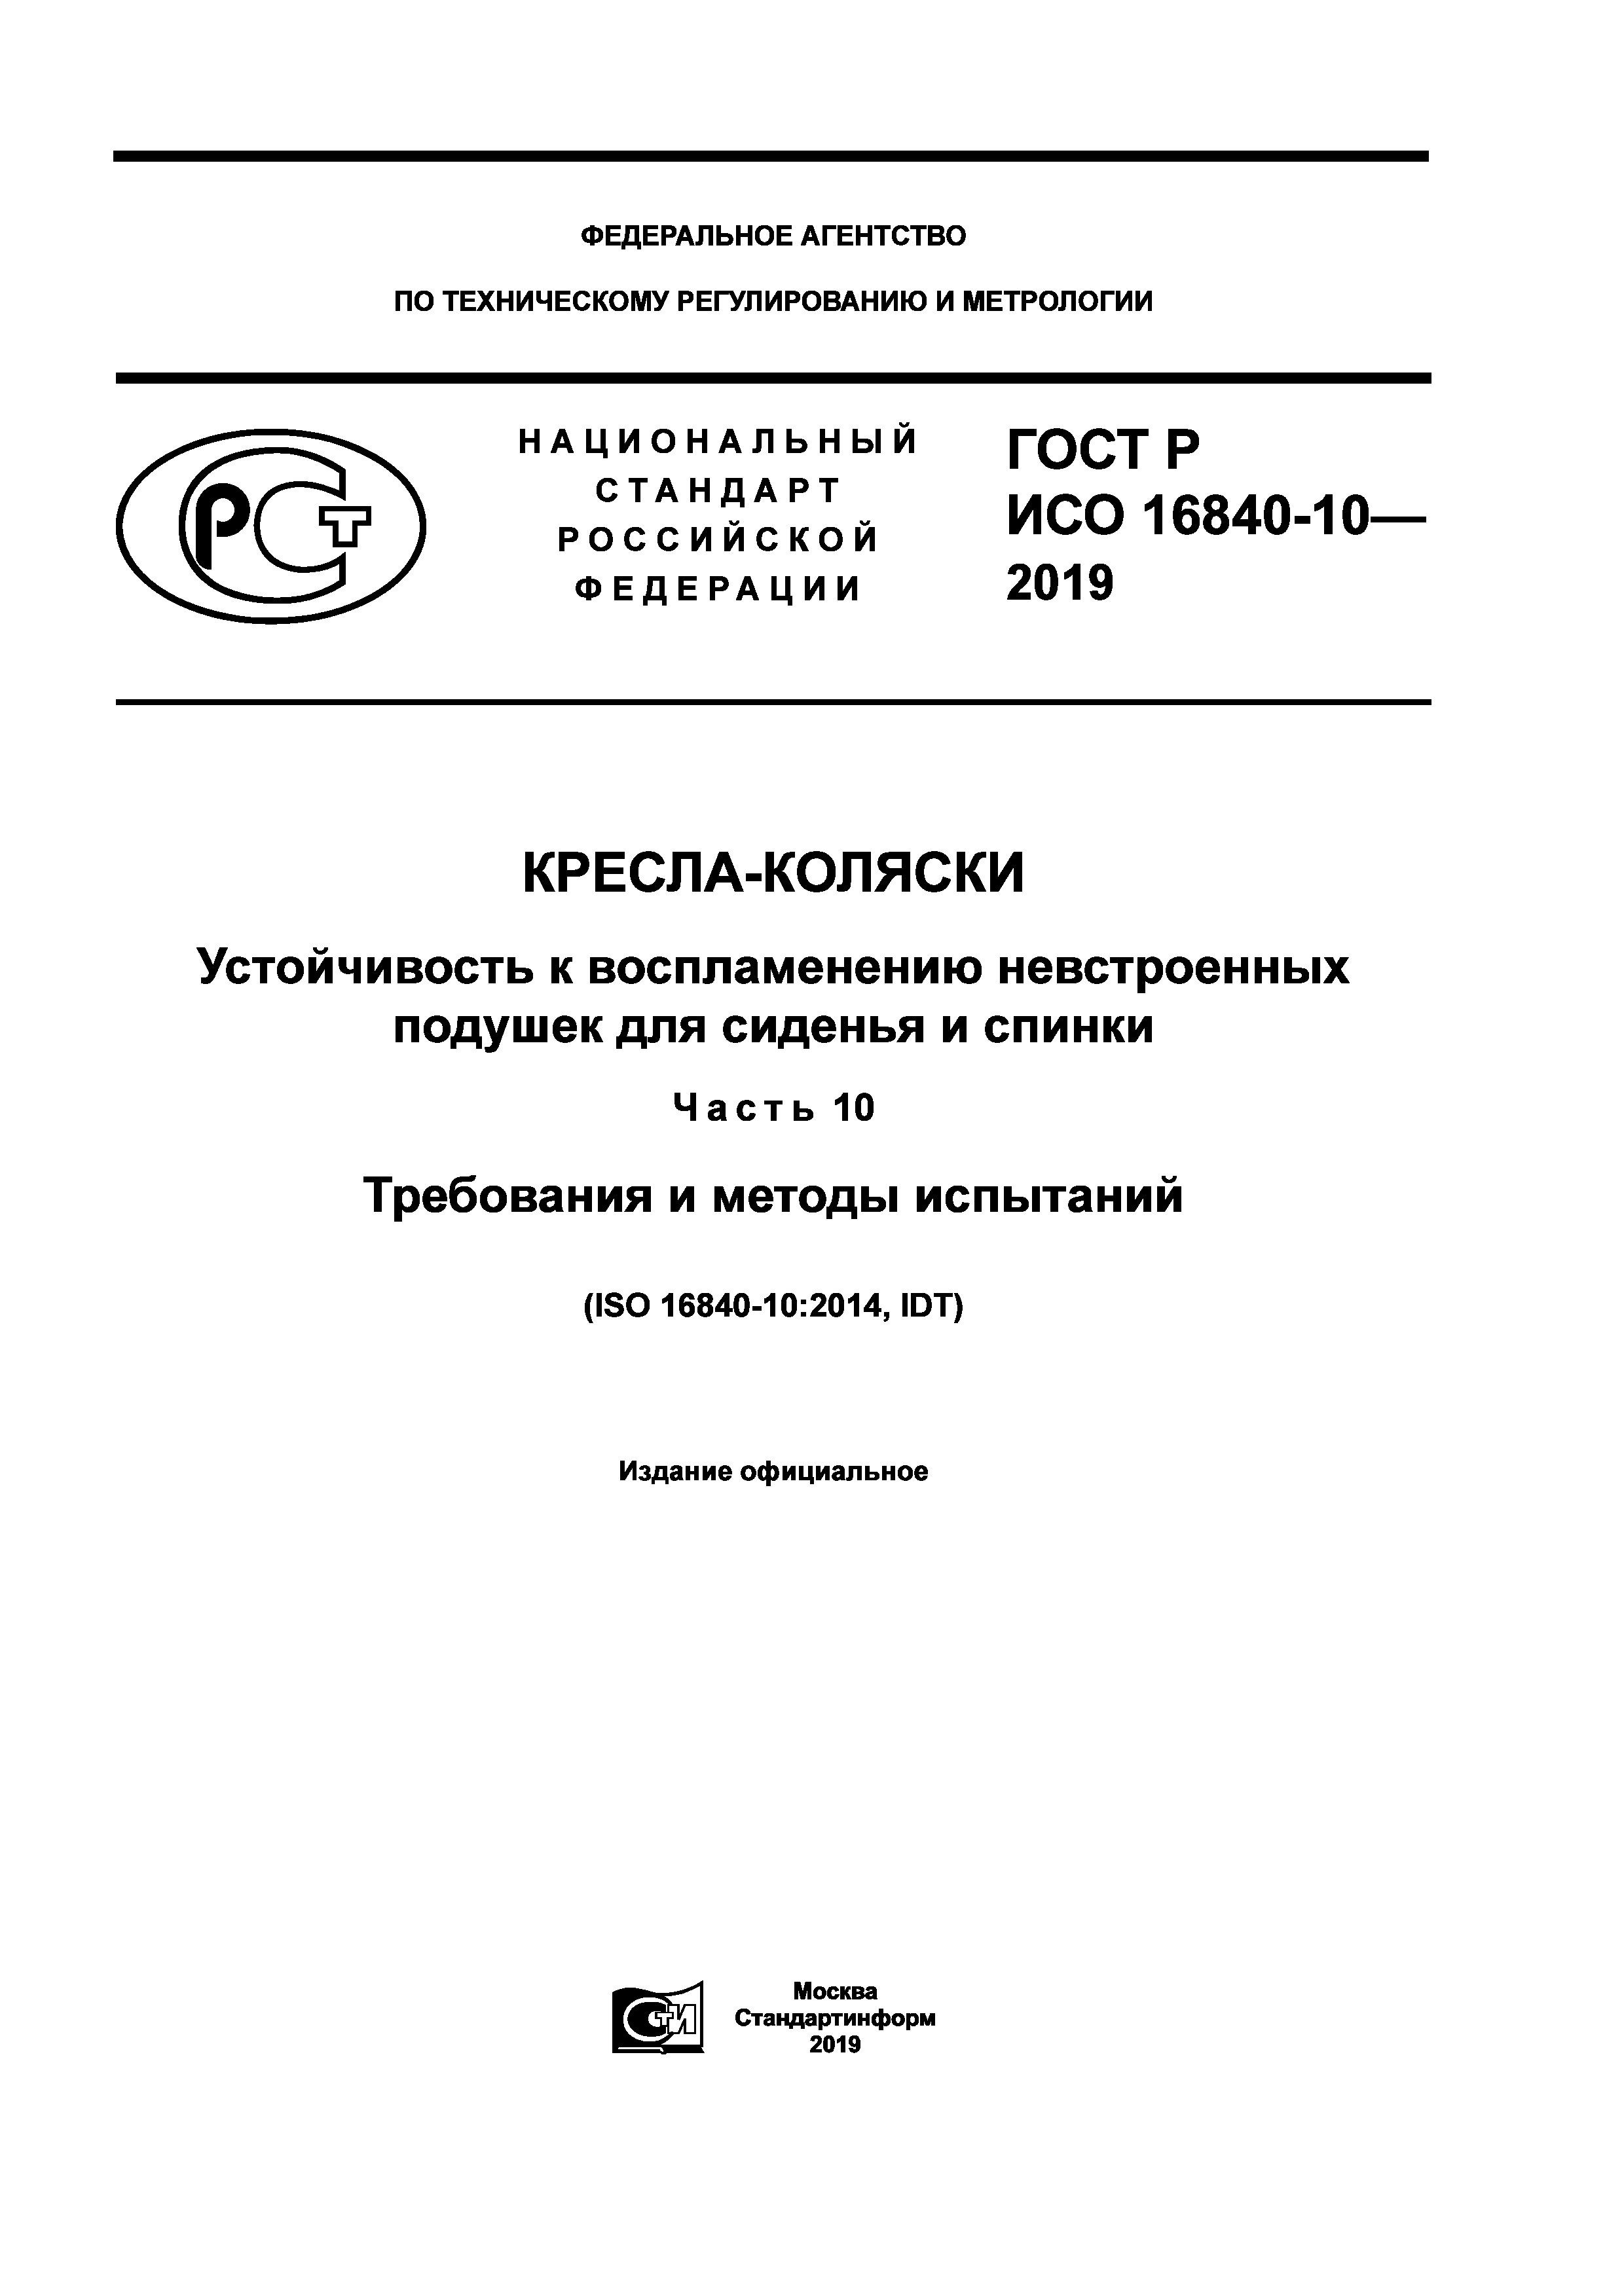 ГОСТ Р ИСО 16840-10-2019